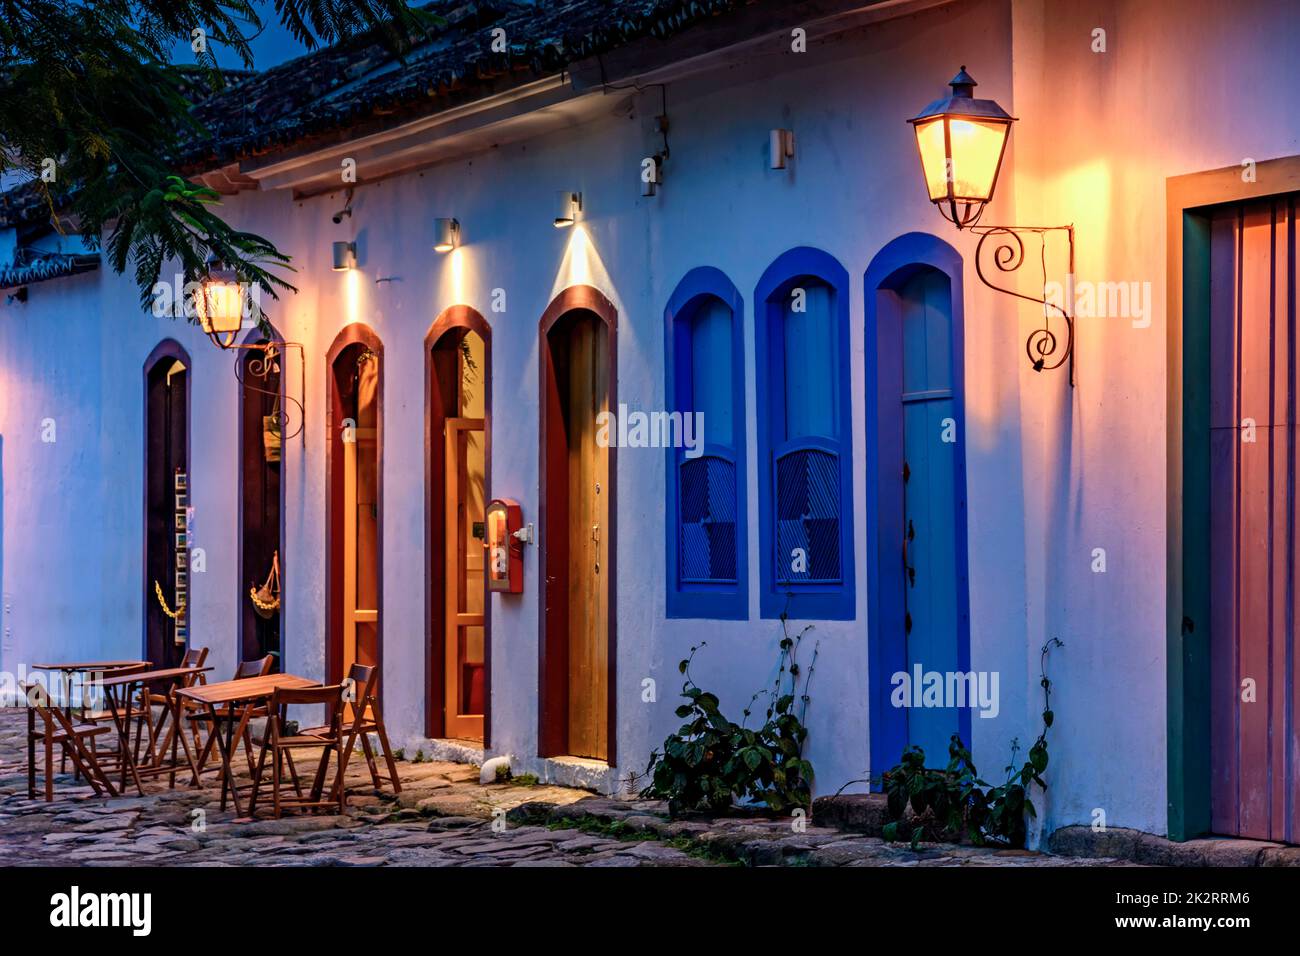 Le case di strada e di stile coloniale illuminano di notte nella città di Paraty Foto Stock